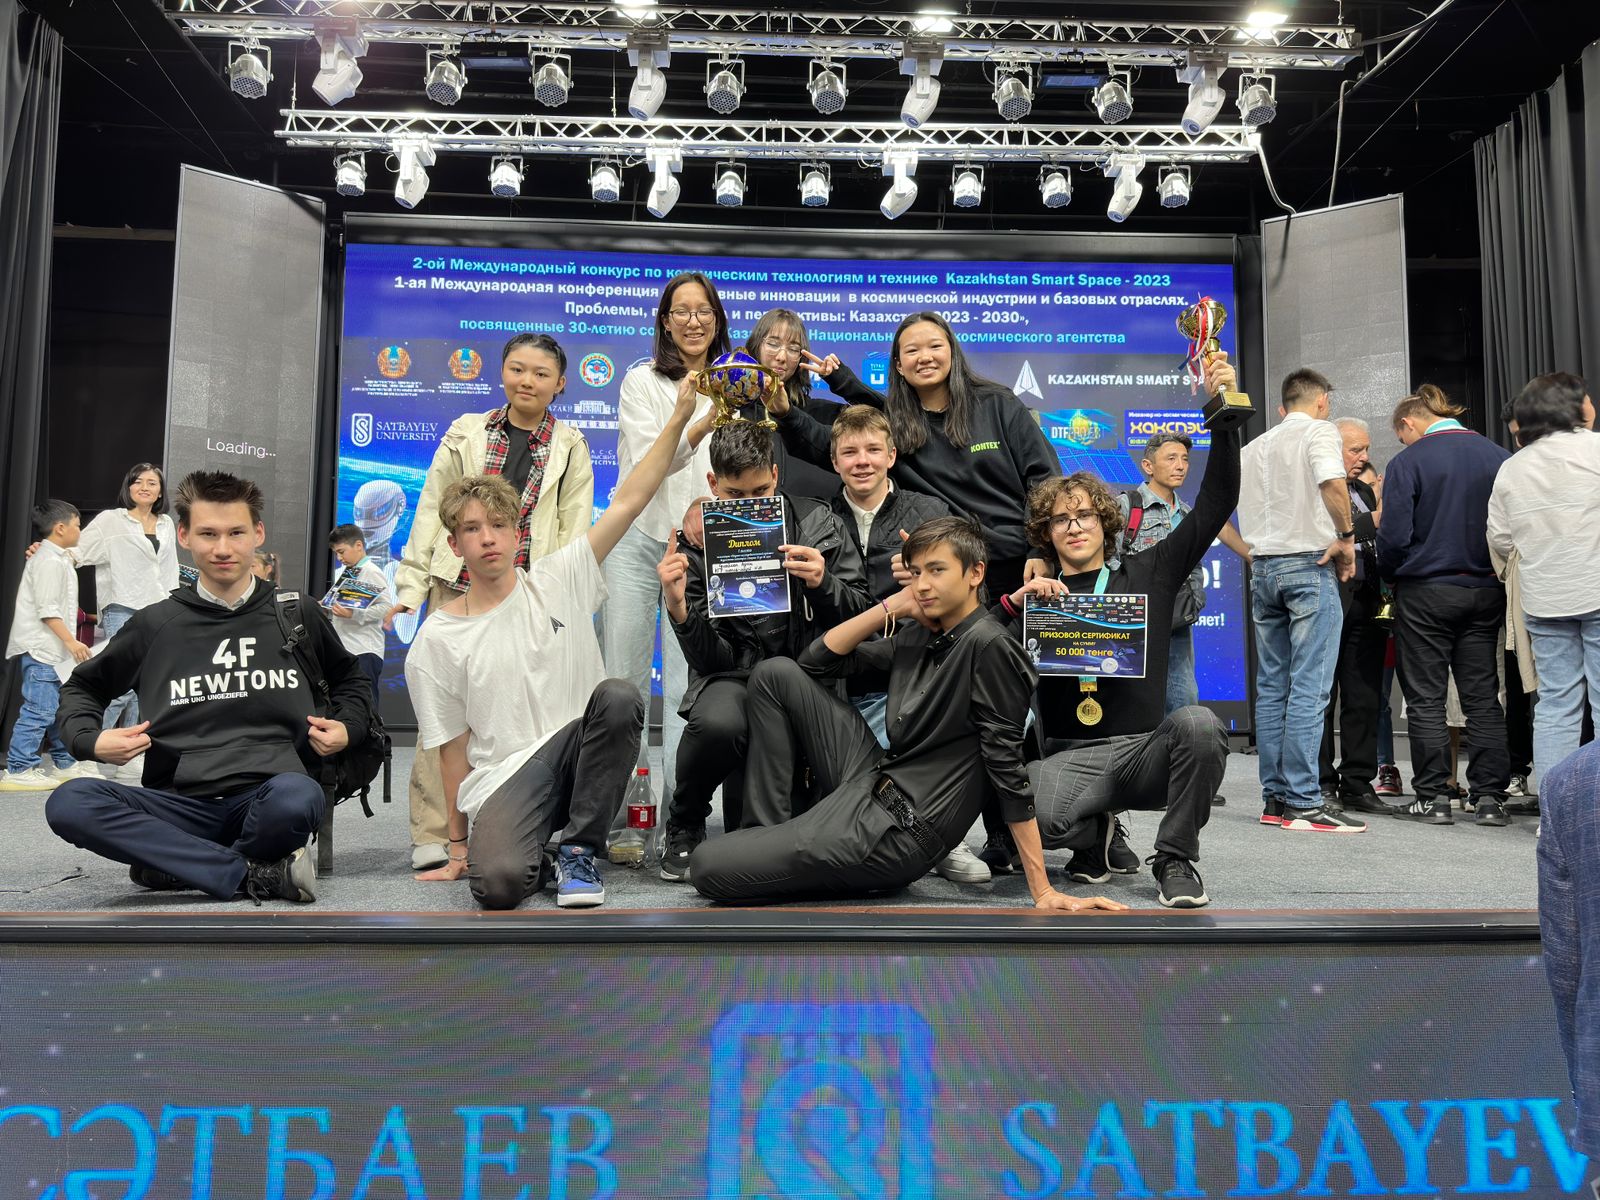 KazakhstanSmartSpace ғарыш технологиялары мен жабдықтары бойынша халықаралық конкурс /Международного конкурса по космическим технологиям и технике KazakhstanSmartSpace